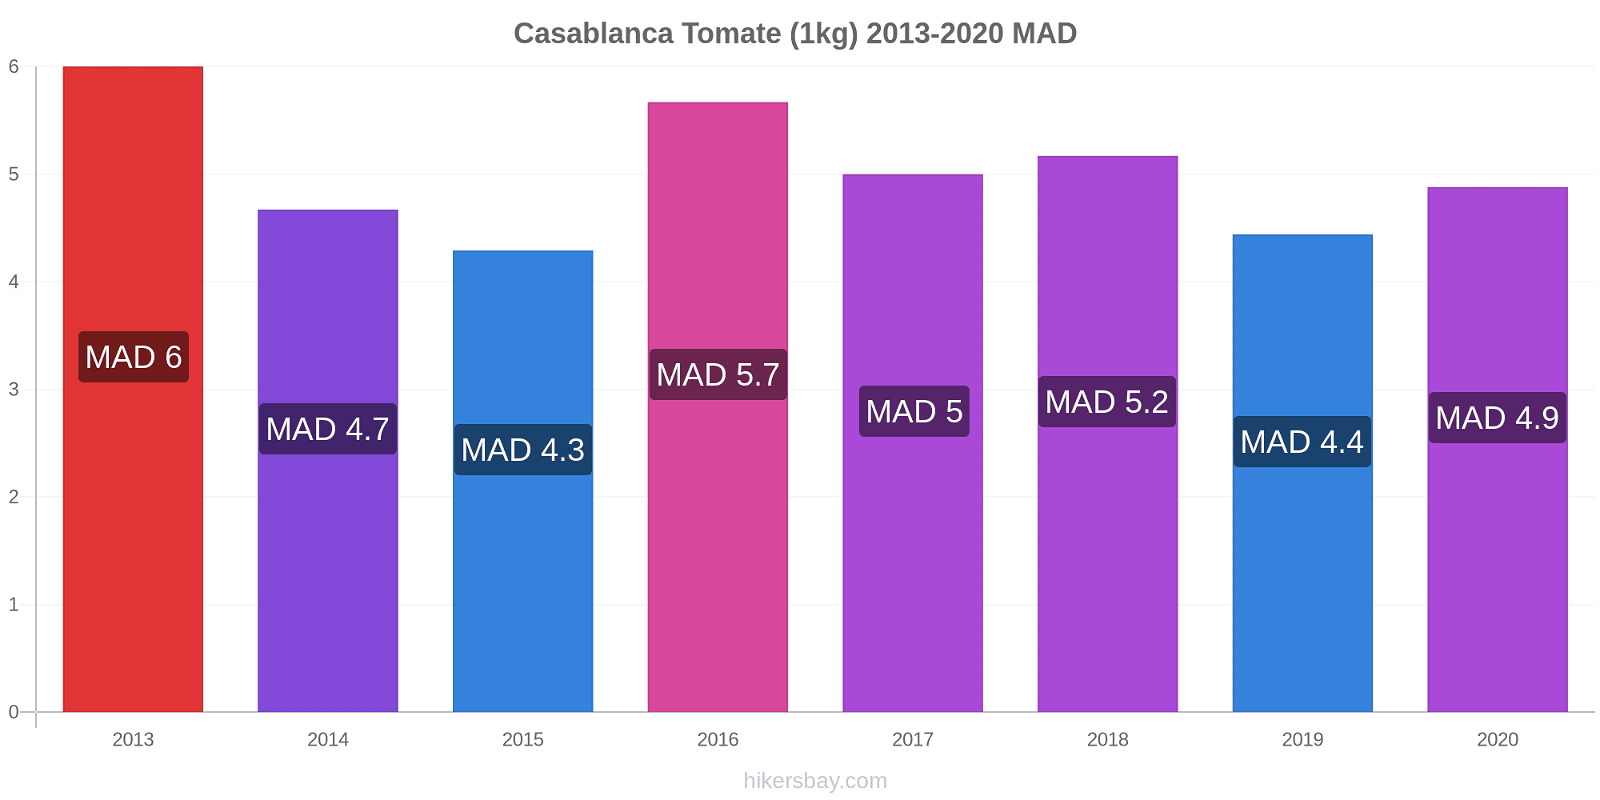 Casablanca cambios de precios Tomate (1kg) hikersbay.com